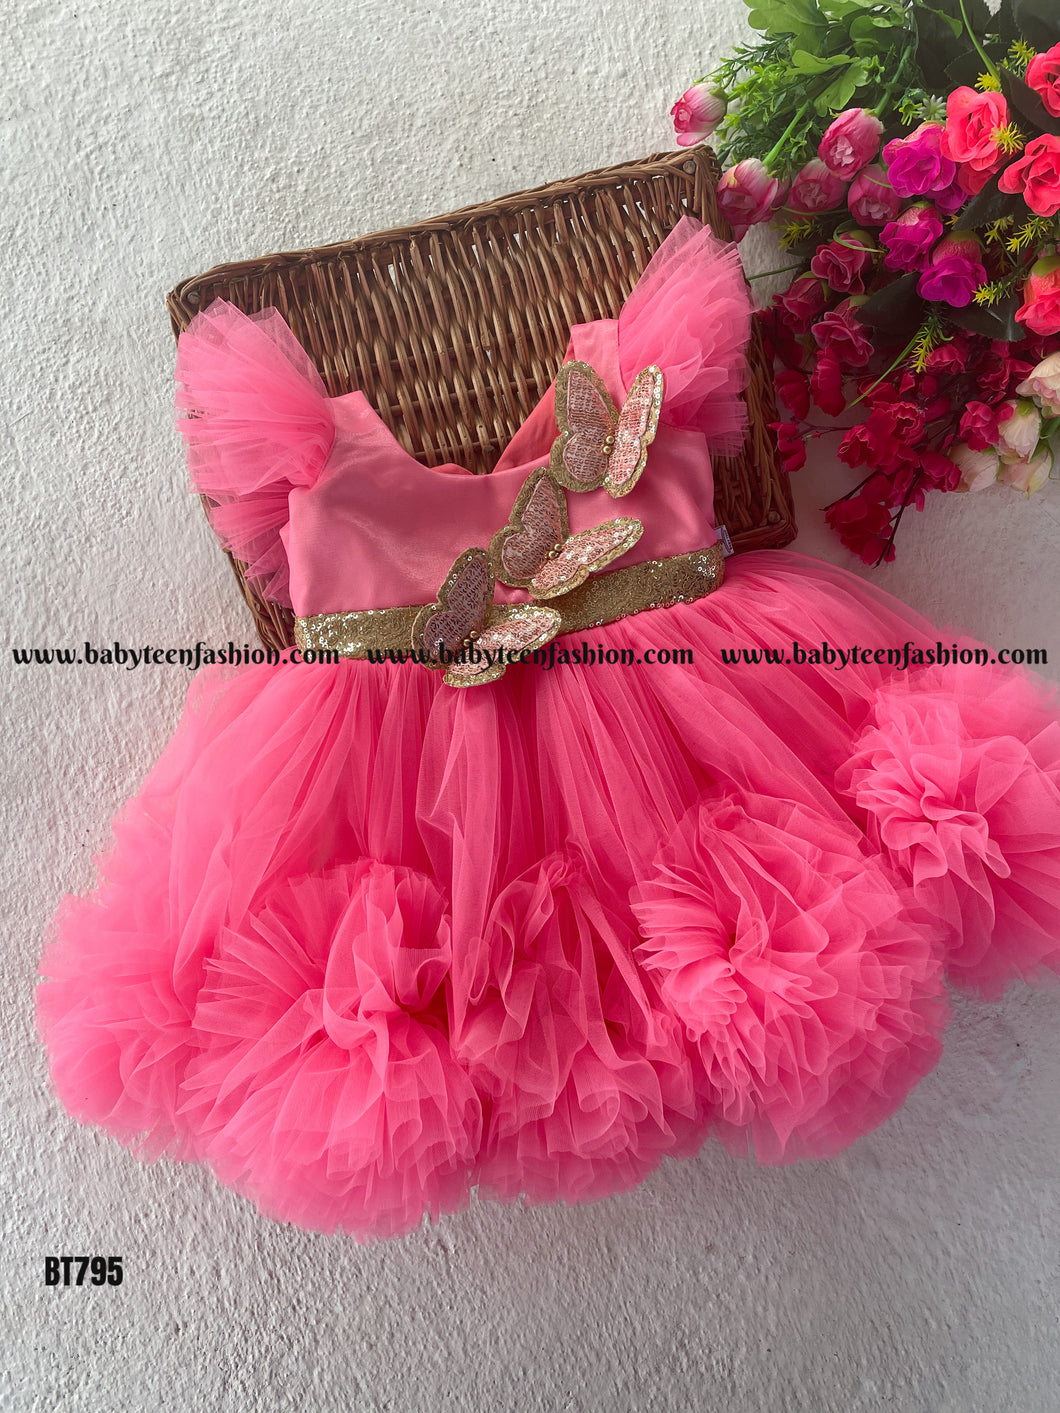 BT795 Blush Butterfly Ballet - Enchanted Garden Dress